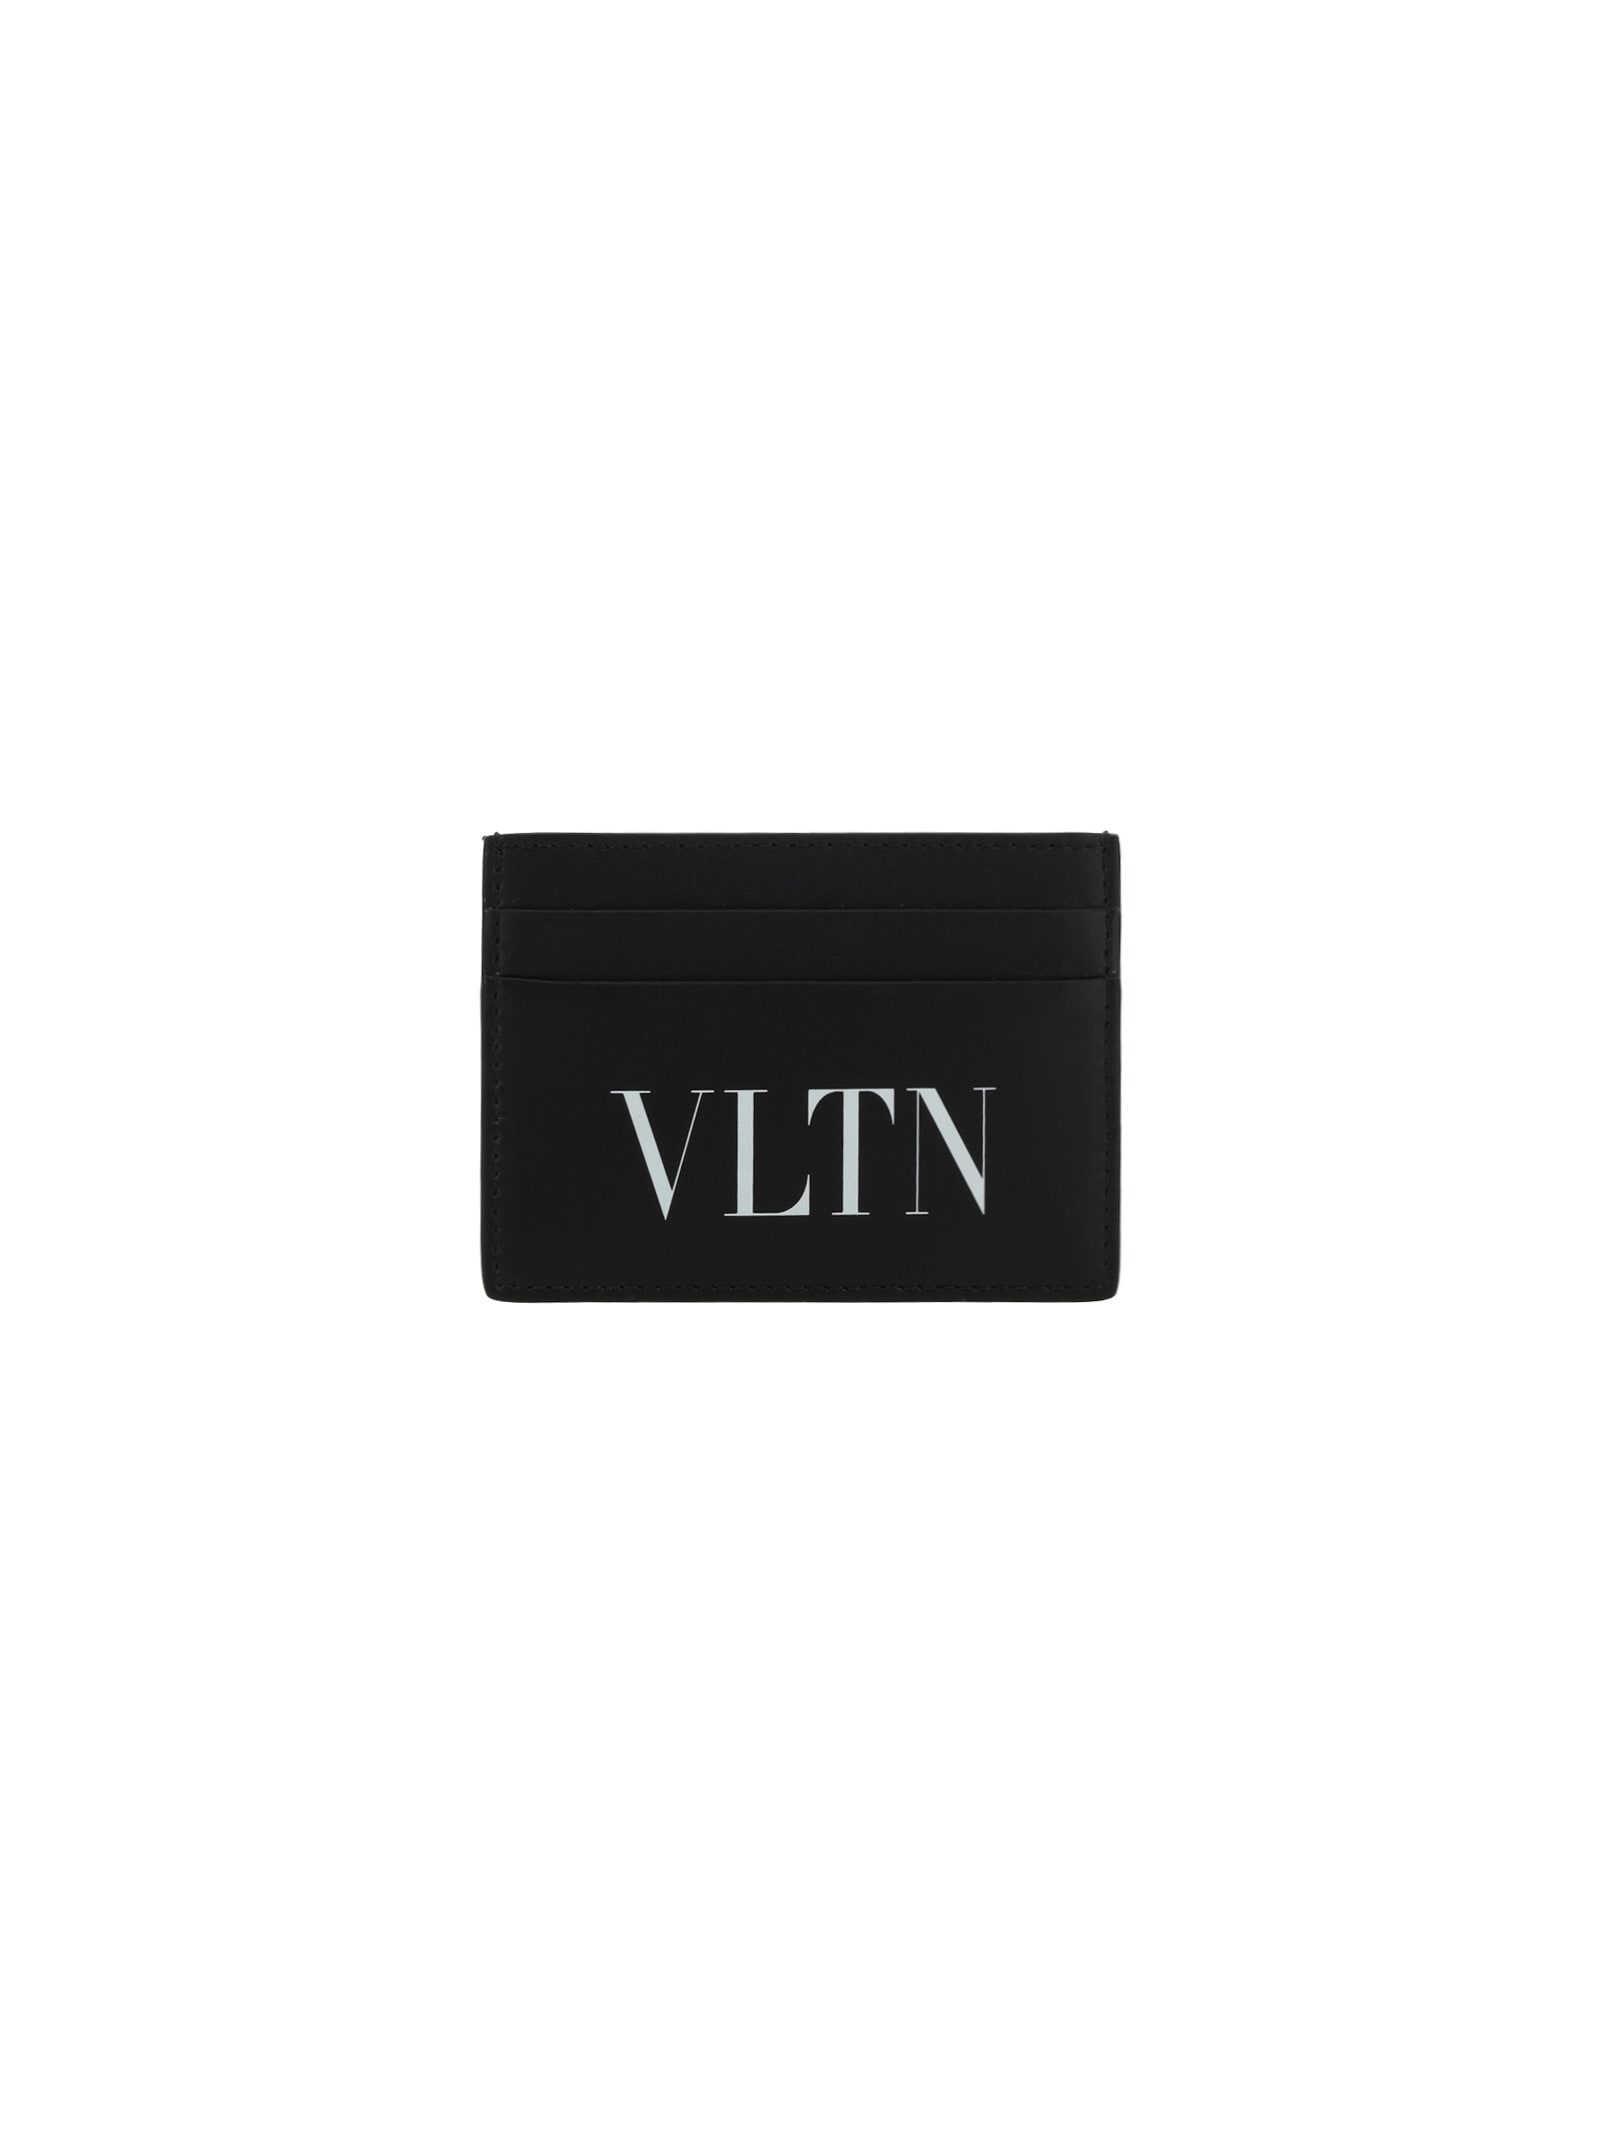 Valentino Garavani Vltn Card Case In Nero/bianco